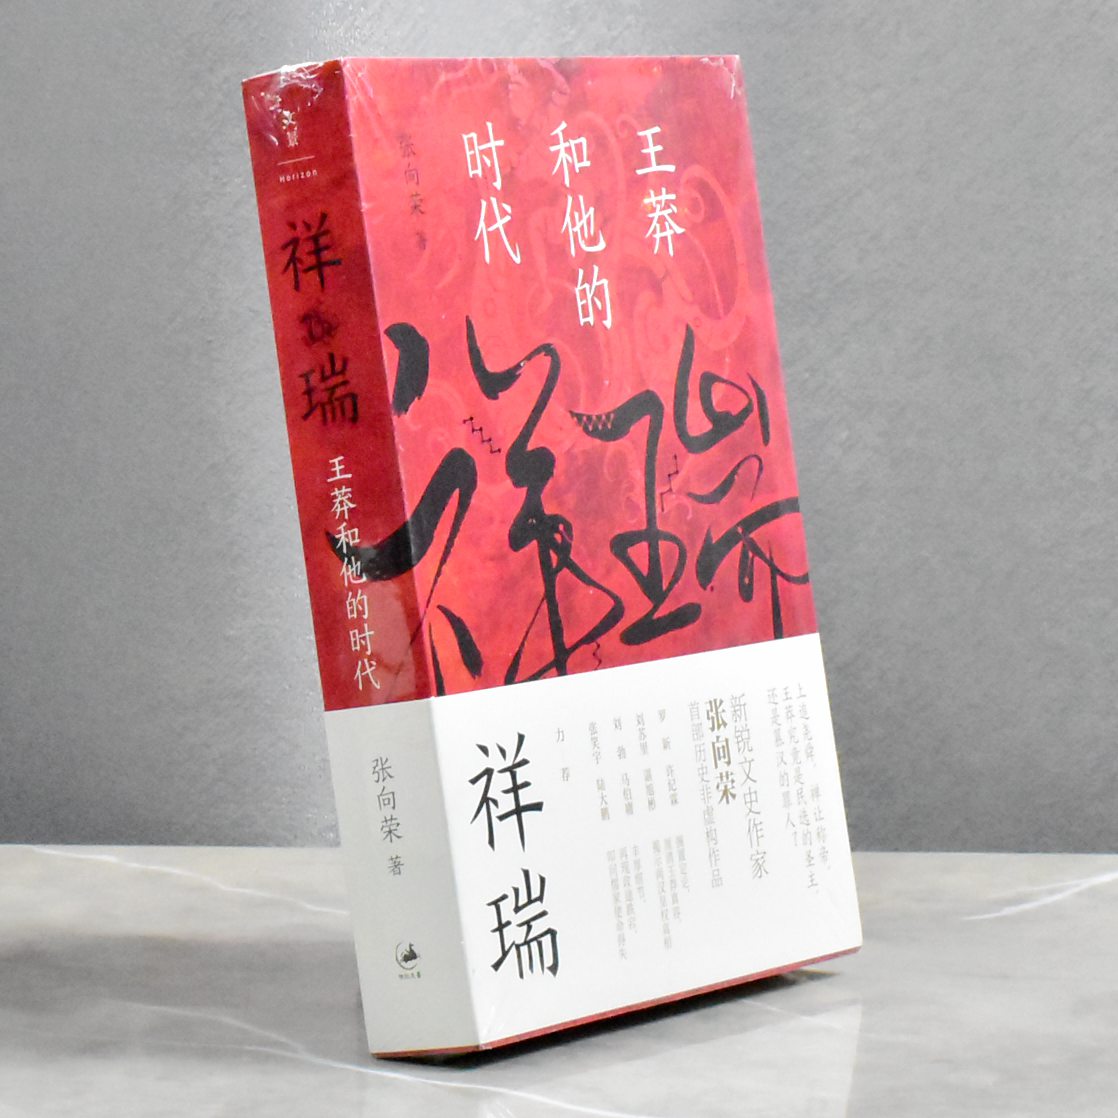 祥瑞王莽和他的时代  正版全新作者: 张向荣 售价高于定价 出版社: 上海人民出版社9787208172036